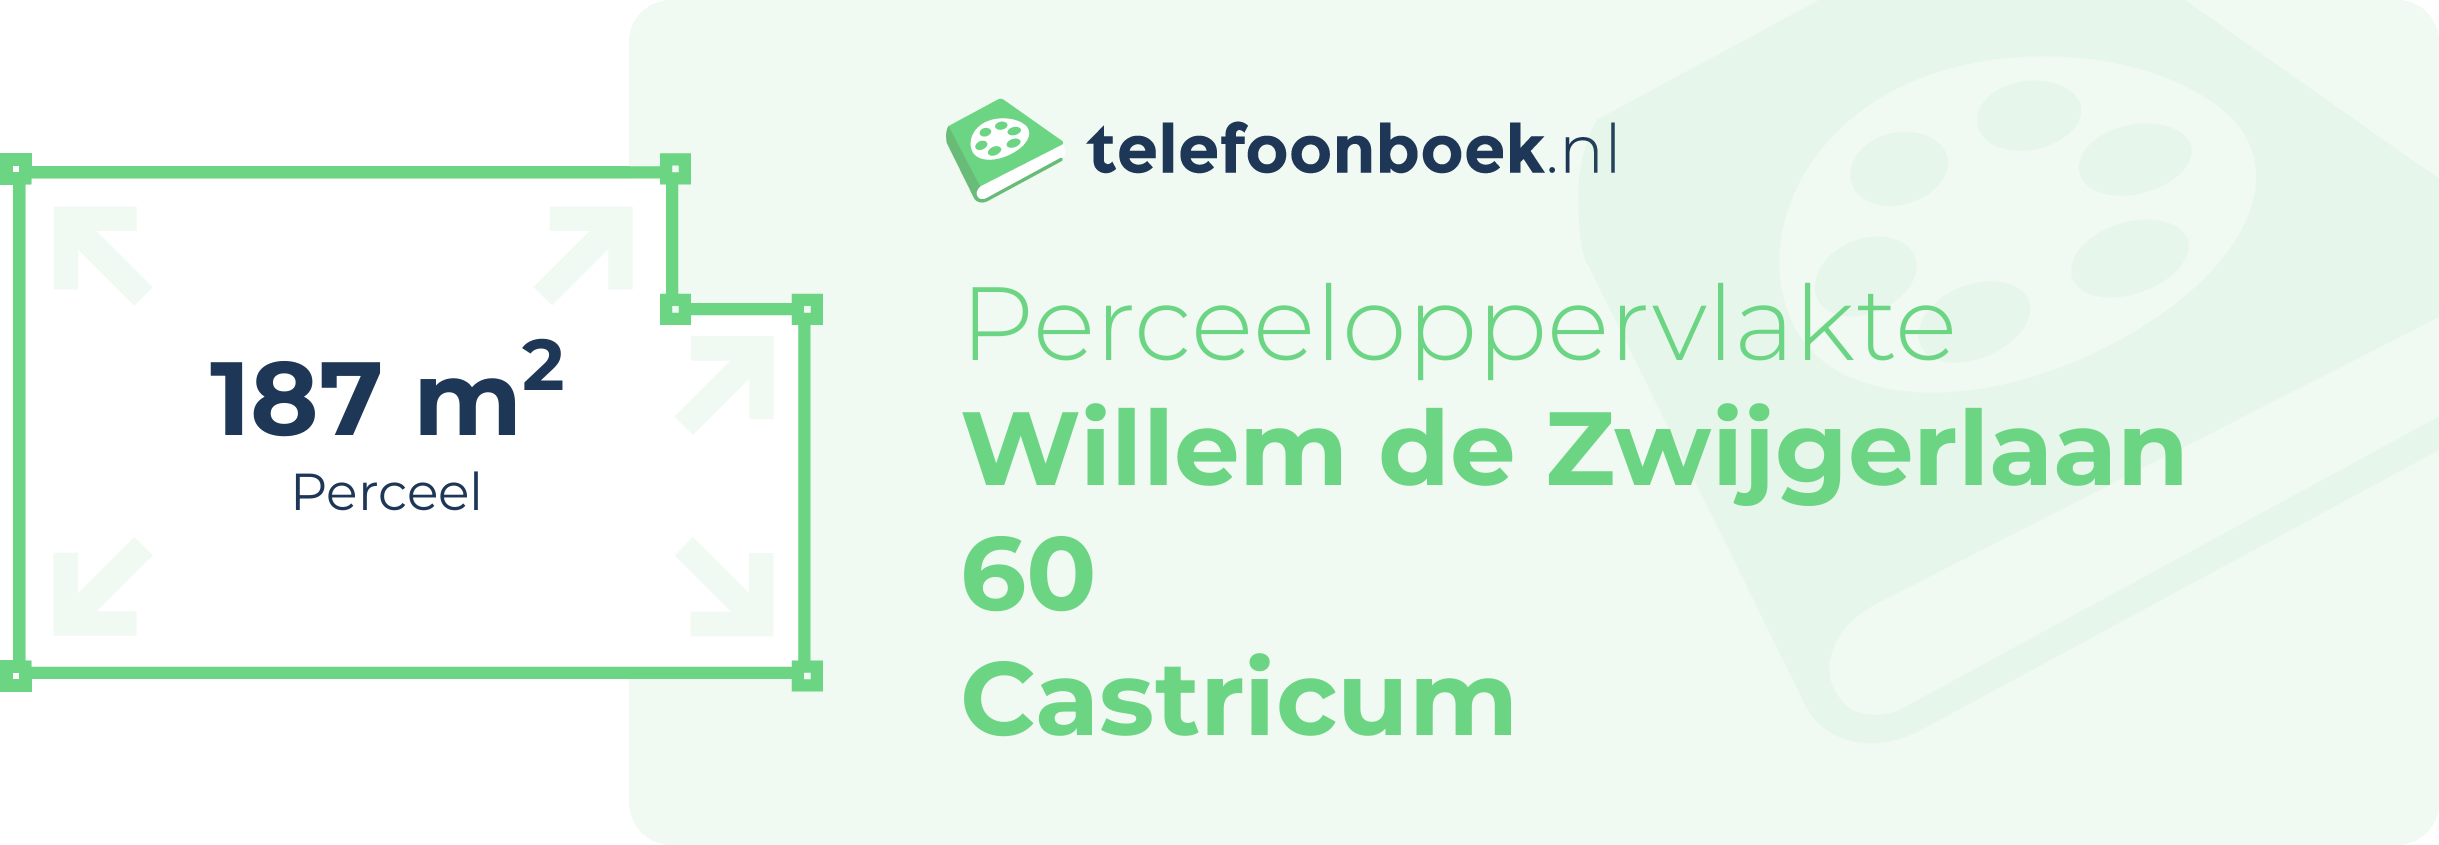 Perceeloppervlakte Willem De Zwijgerlaan 60 Castricum